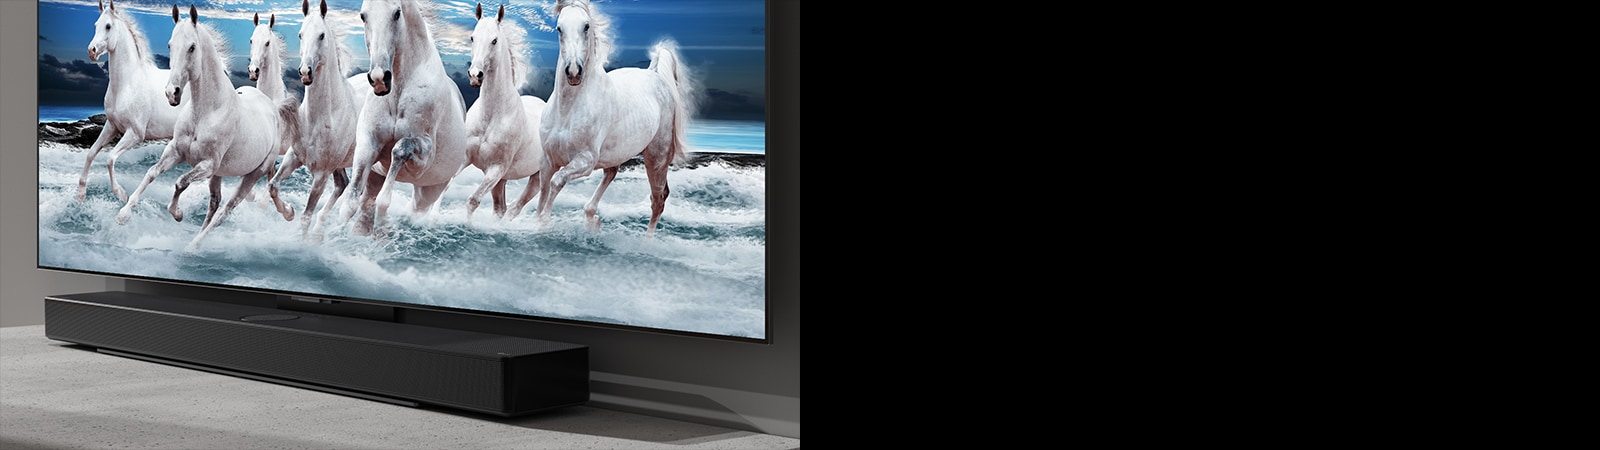 Το sound bar και η τηλεόραση είναι τοποθετημένα στο λευκό τραπέζι, ενώ στην τηλεόραση εμφανίζονται 7 λευκά άλογα.